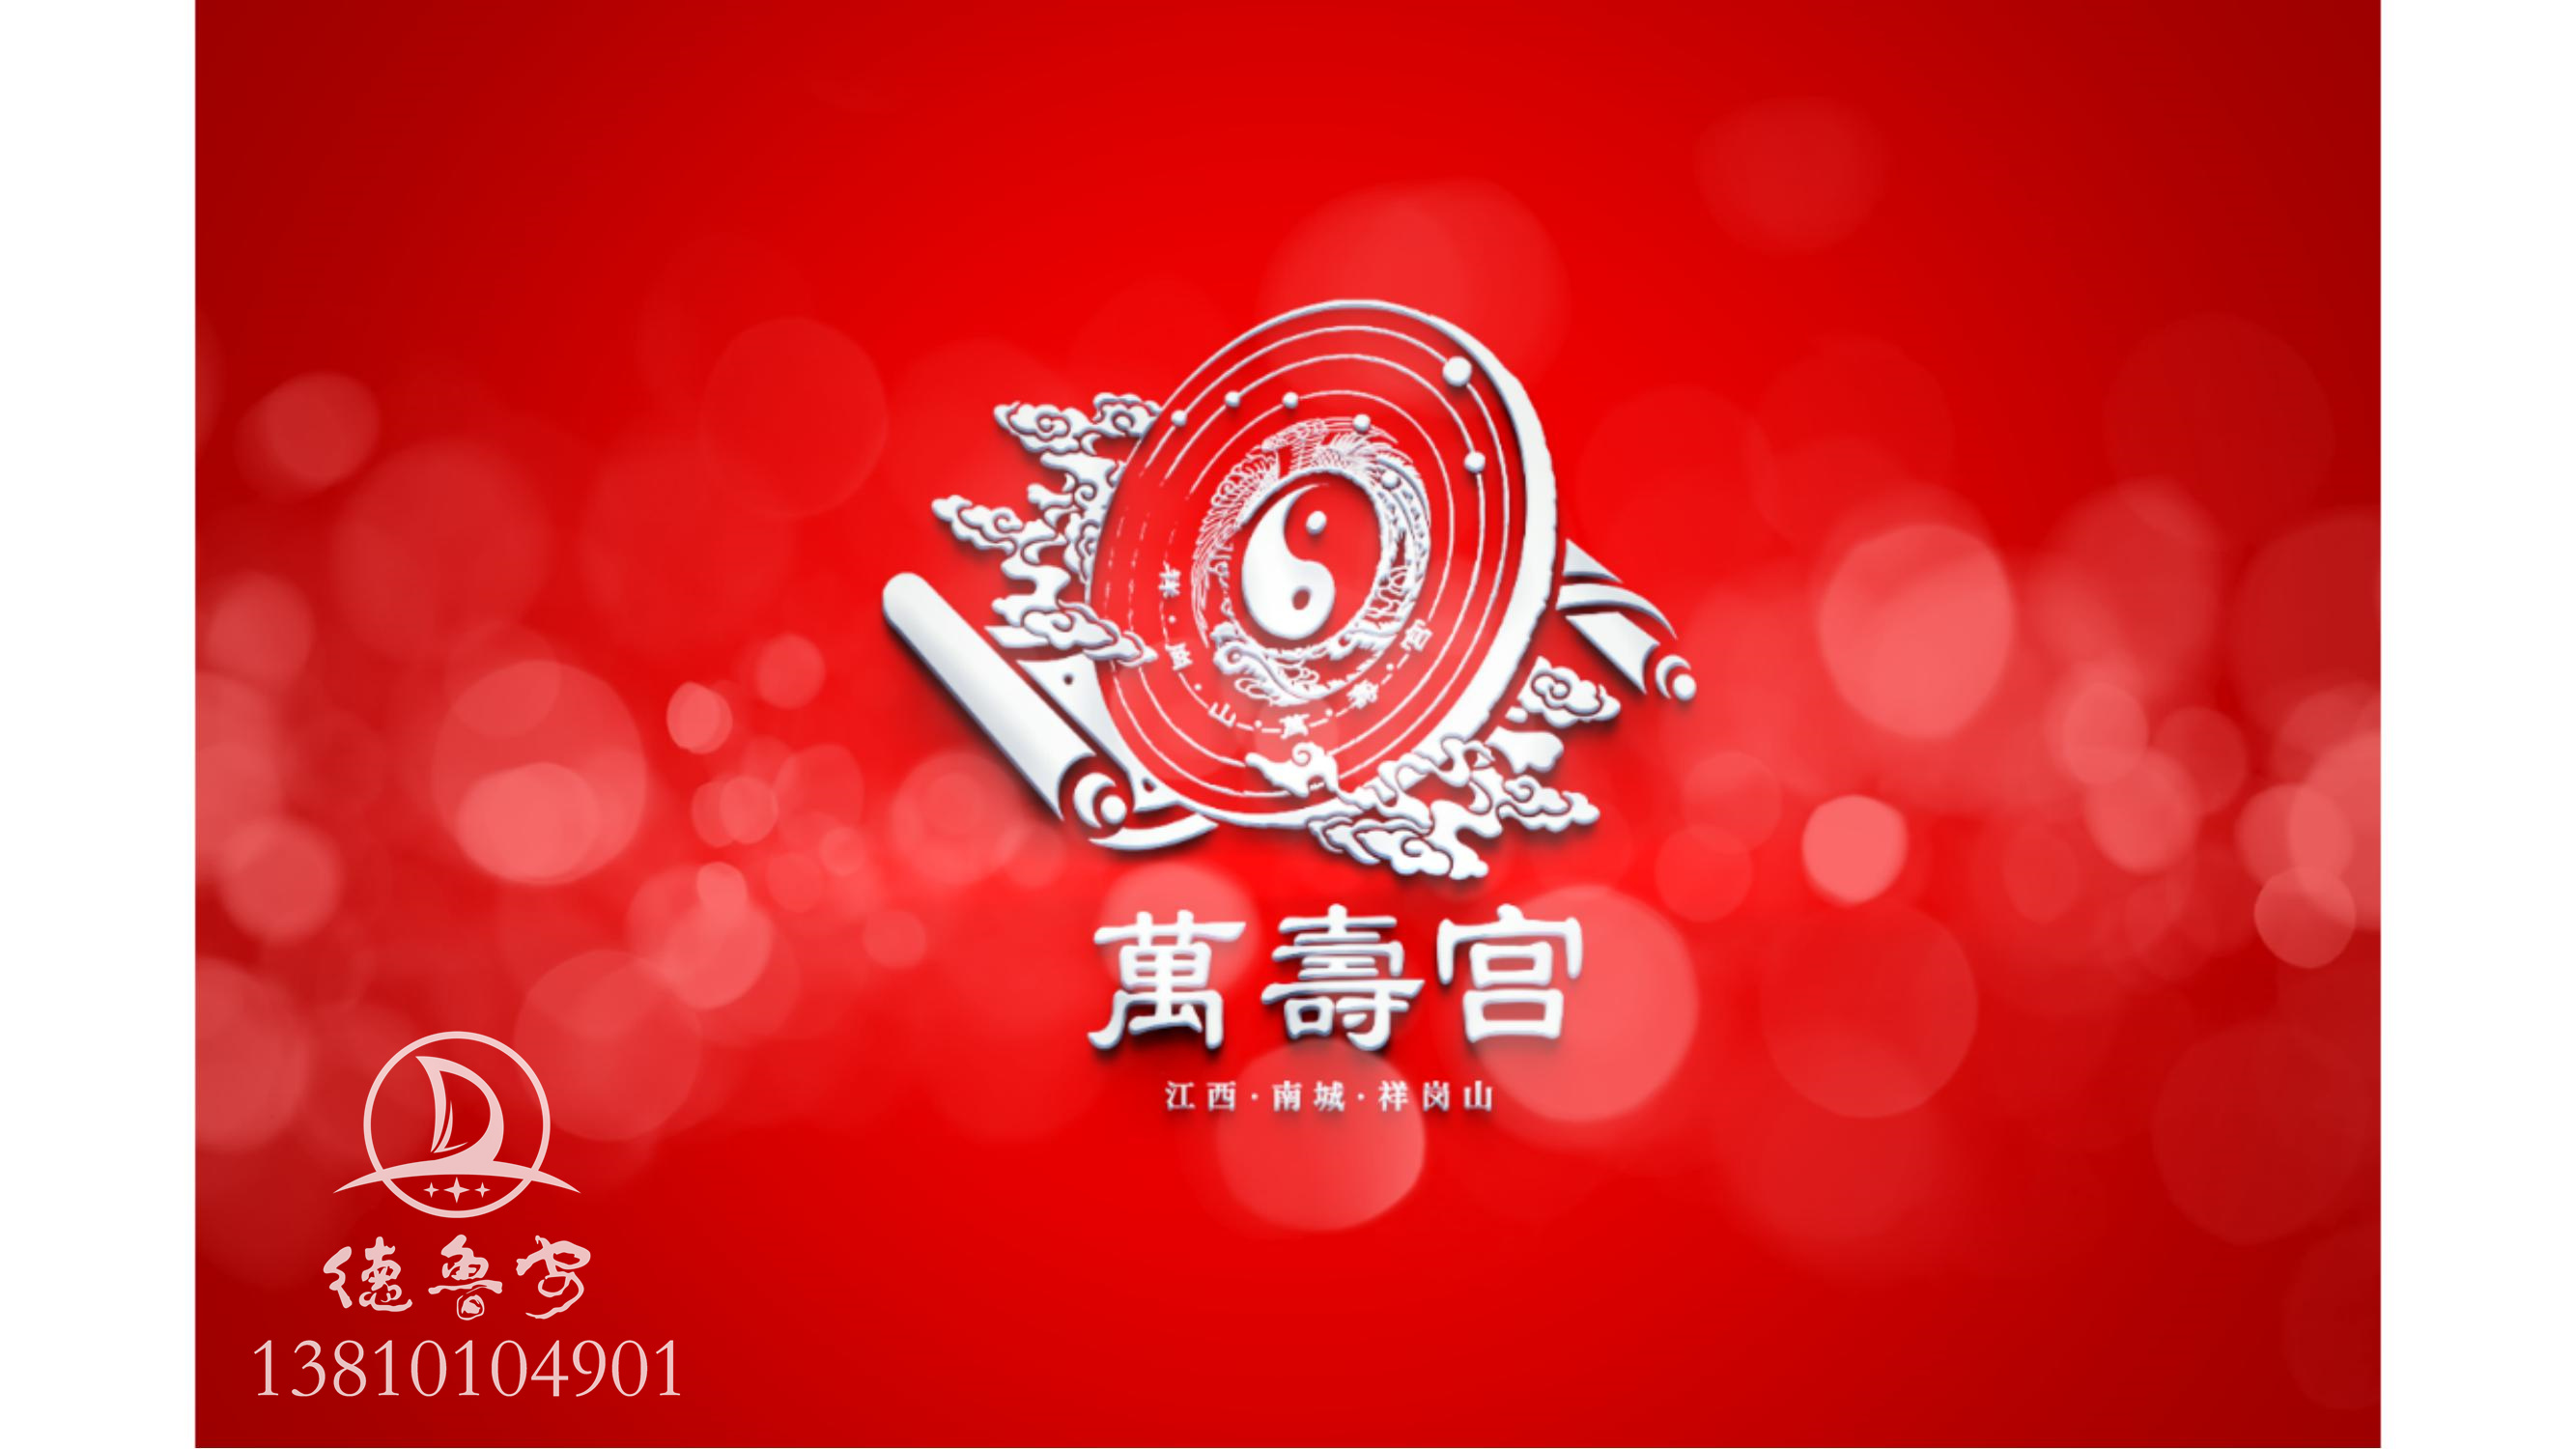 万寿宫logo定稿方案_28.jpg